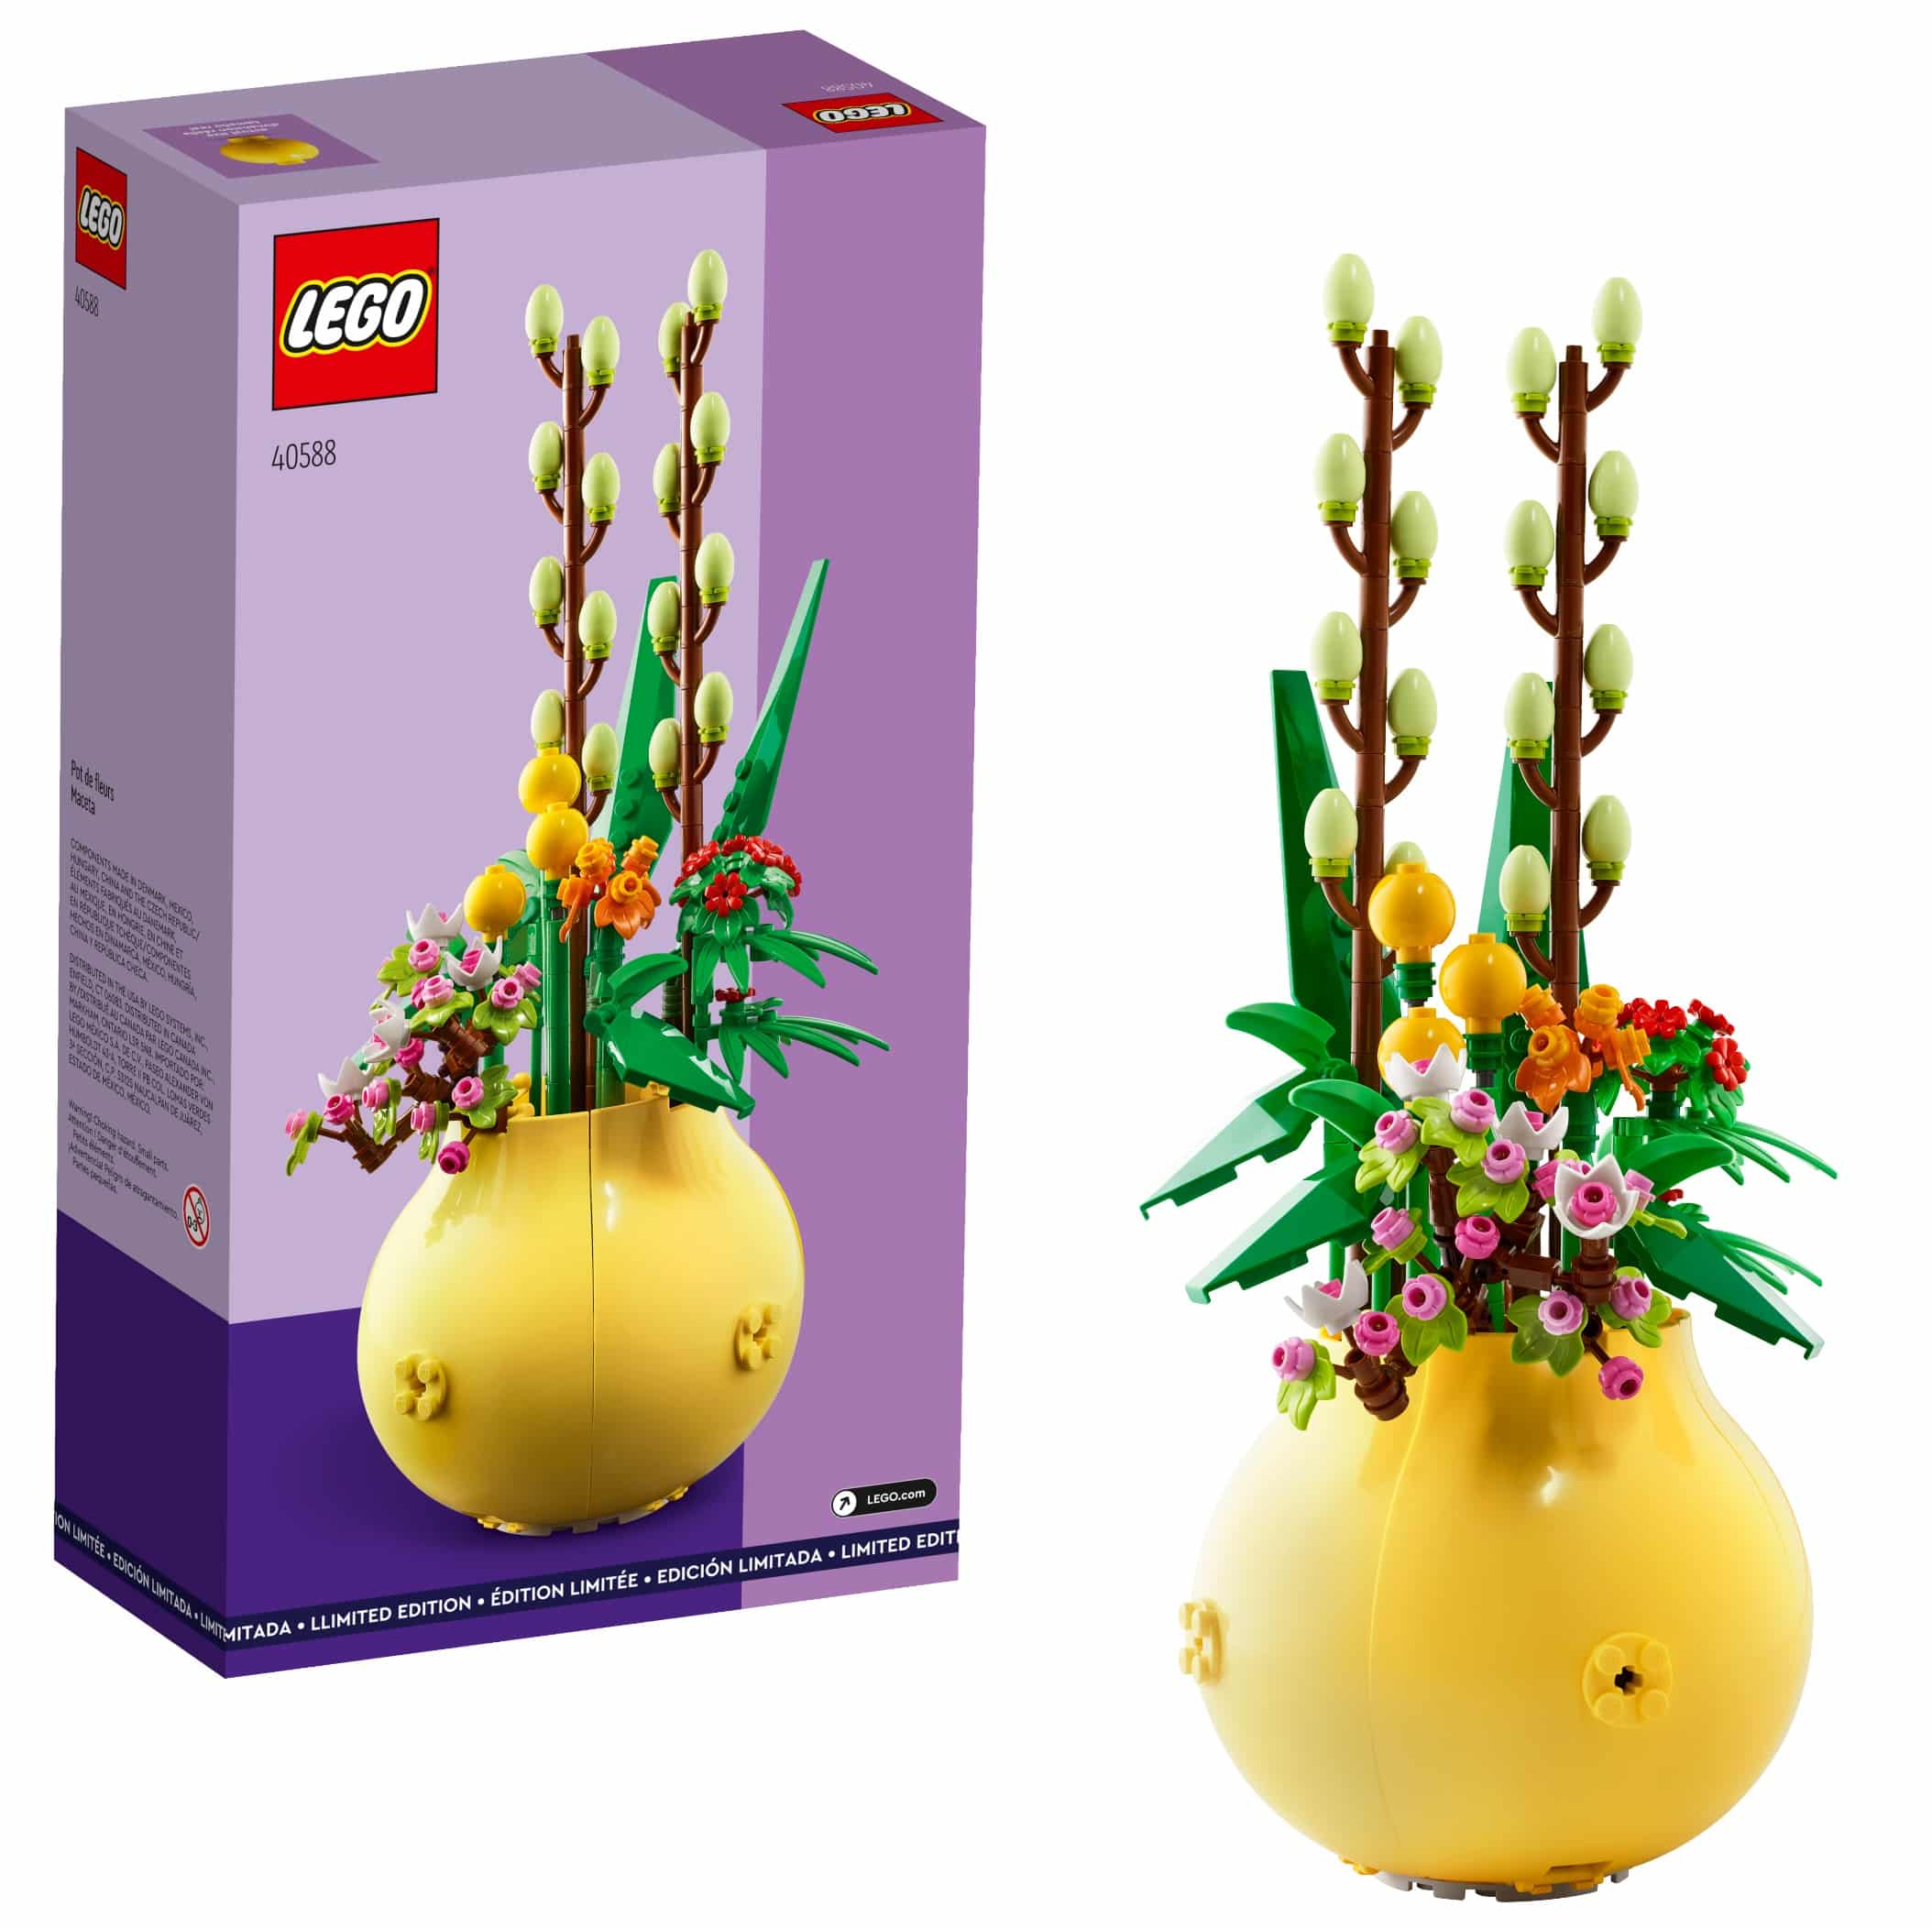 Le pot de fleurs (40588) - Toys Puissance 3